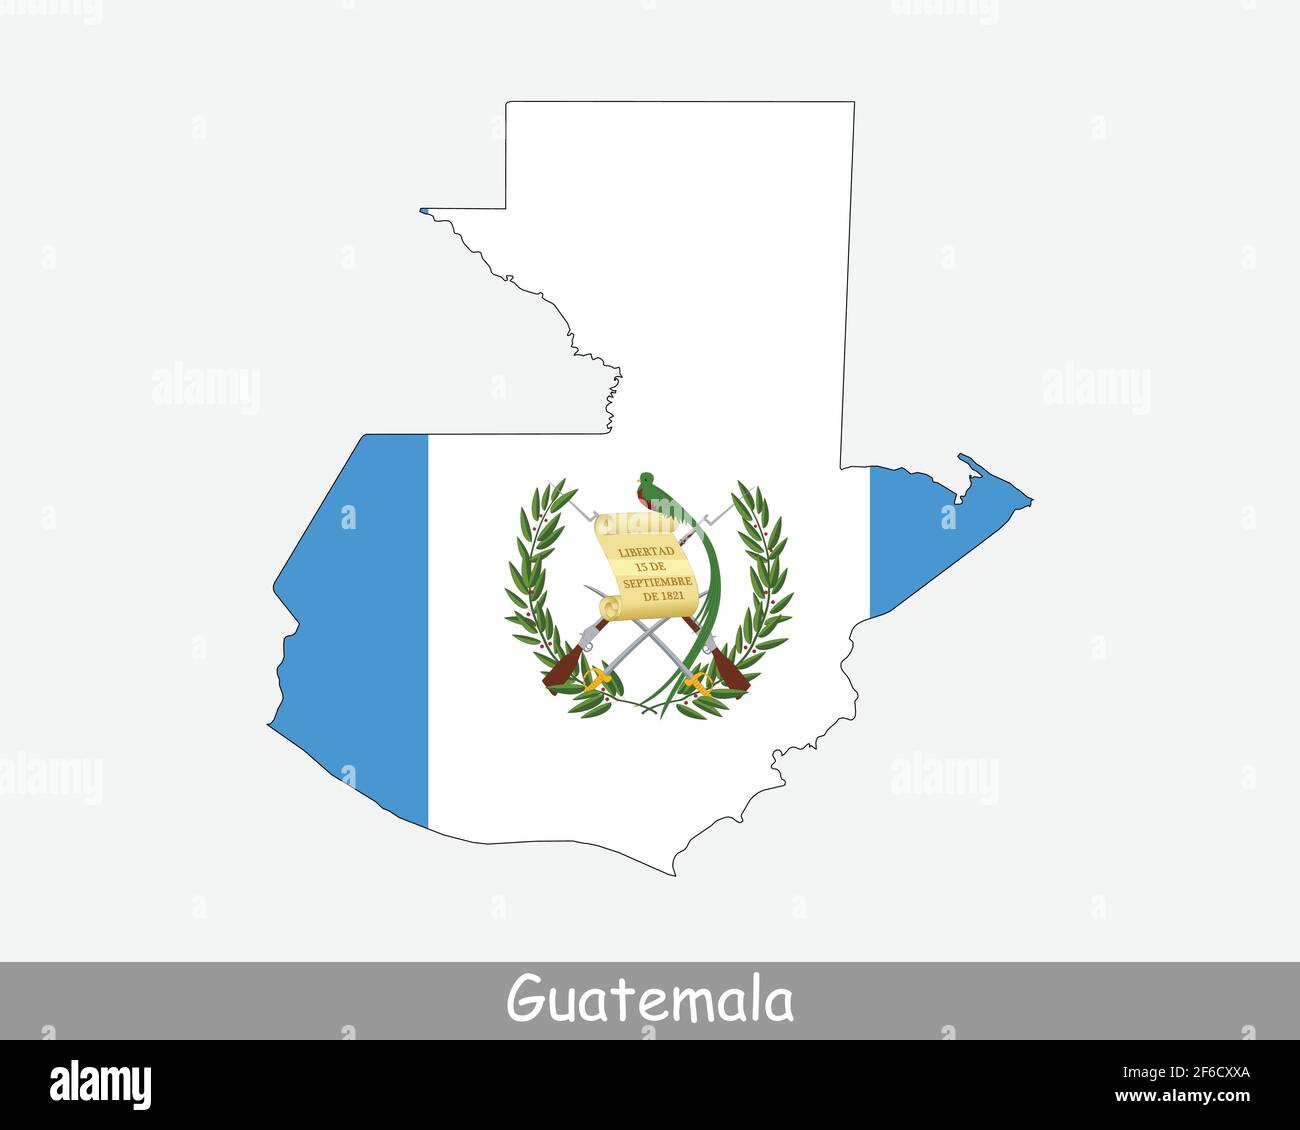 Bandiera della mappa del Guatemala. Mappa della Repubblica del Guatemala con la bandiera nazionale guatemalteca isolata su sfondo bianco. Illustrazione vettoriale. Illustrazione Vettoriale